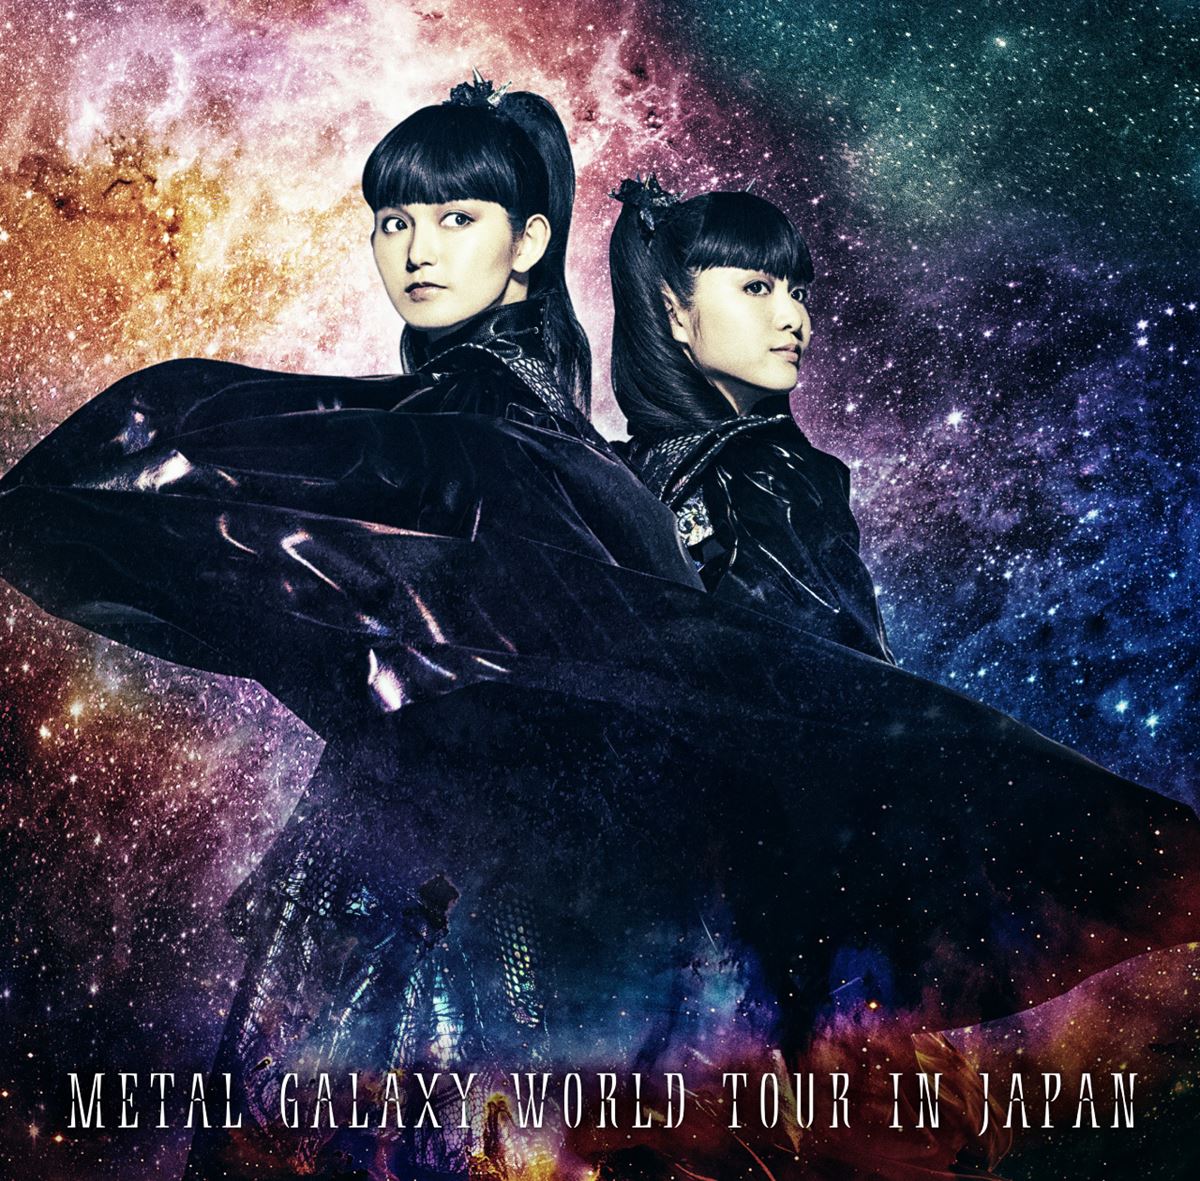 METAL GALAXY WORLD TOUR IN JAPAN アナログ盤ジャケット